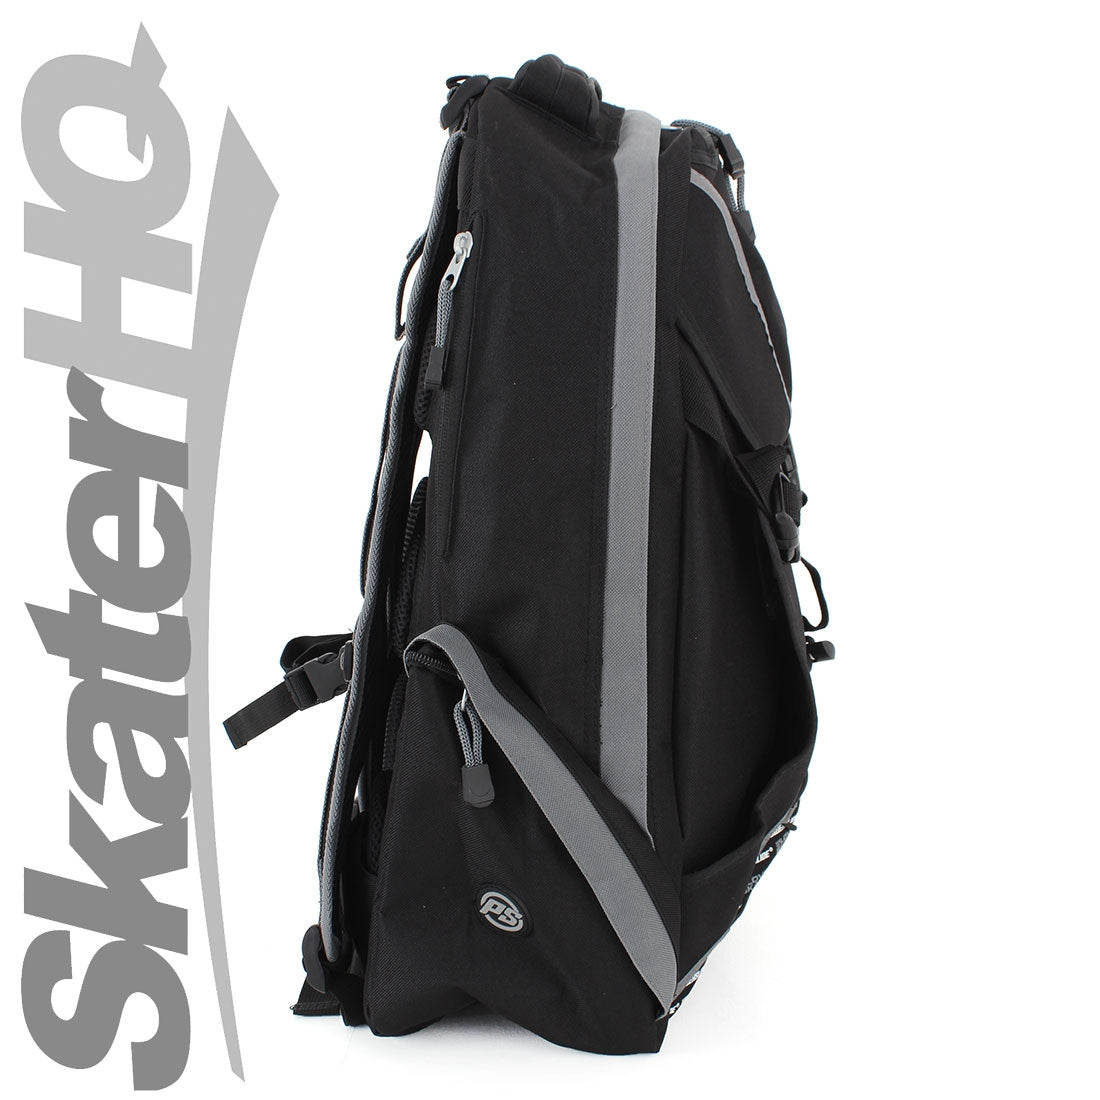 Powerslide Sport Backpack - Black/Grey Bags and Backpacks